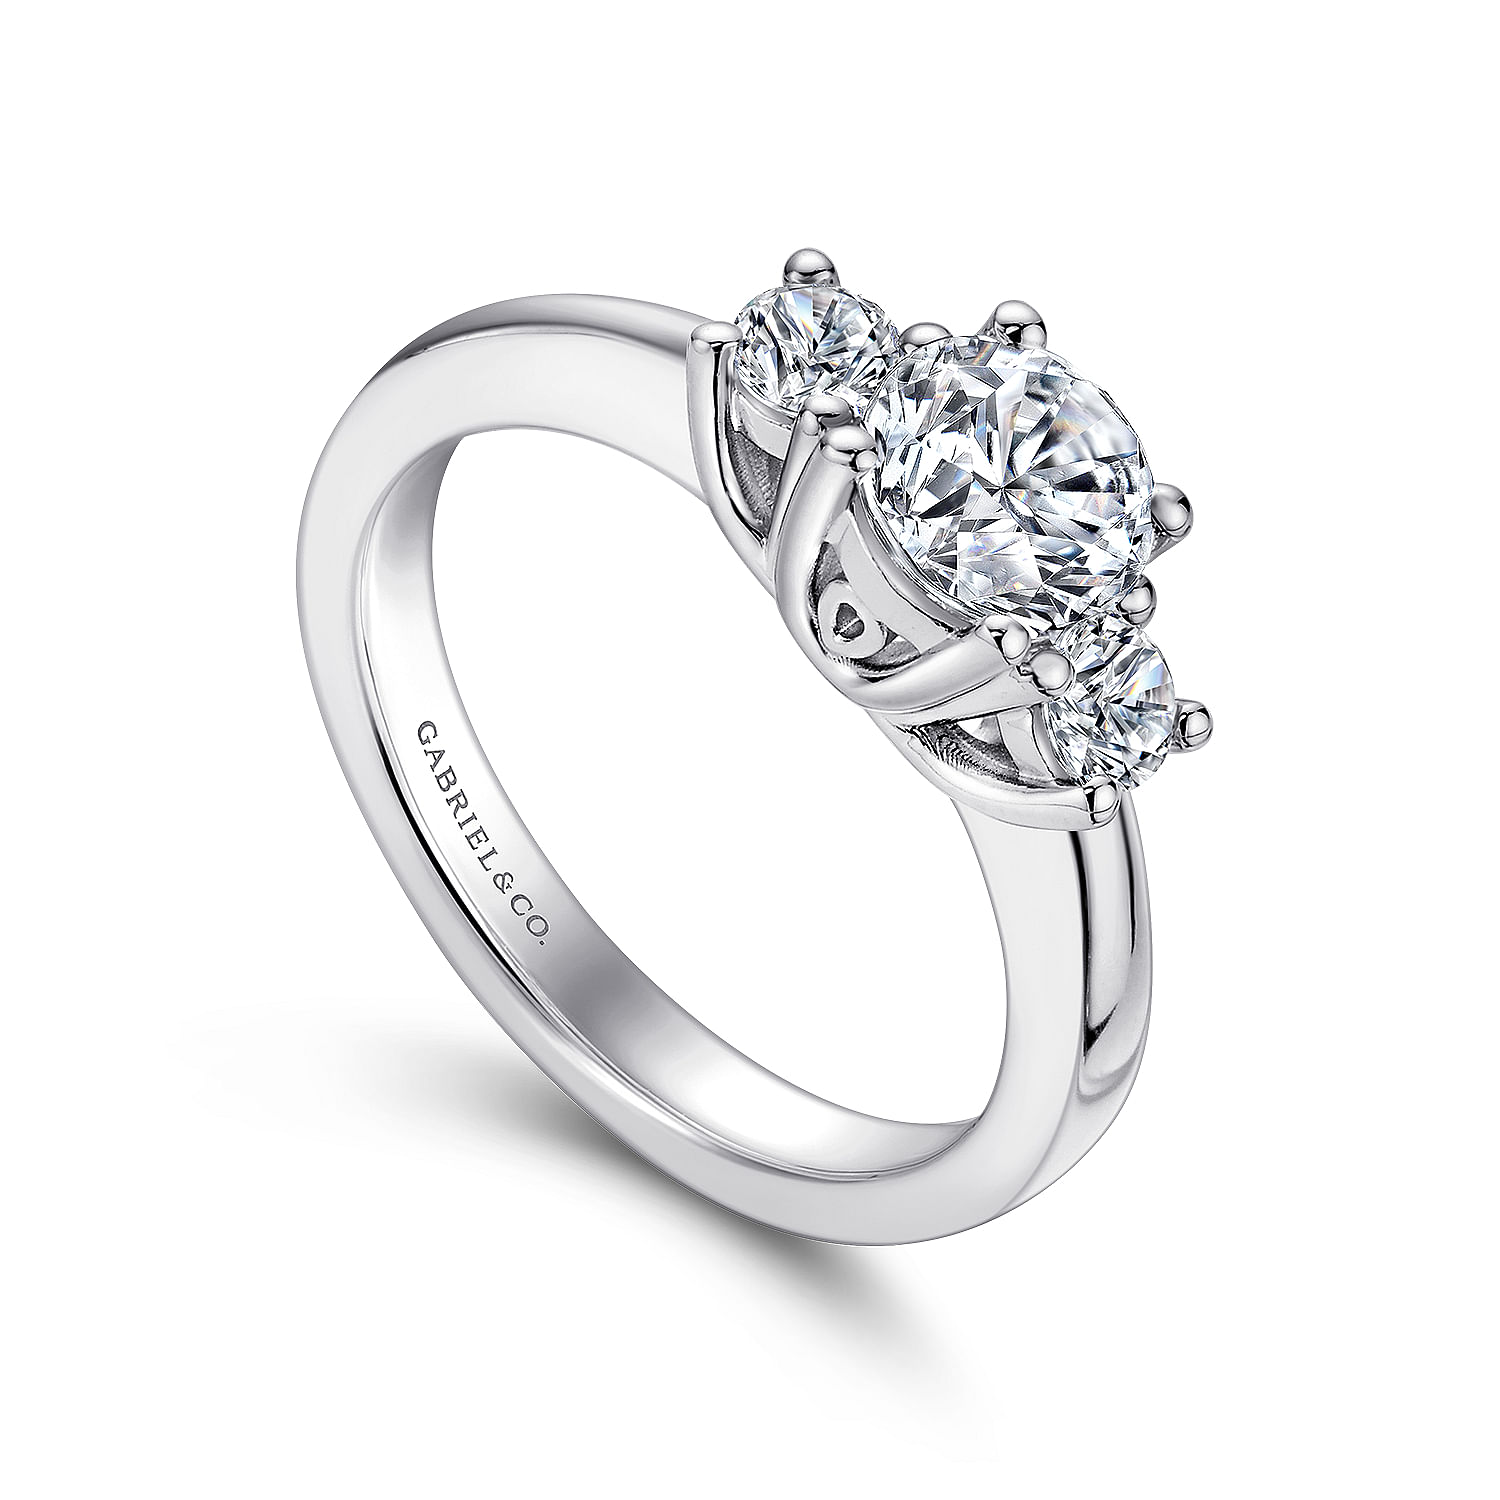 14K White Gold Round Three Stone Diamond Engagement Ring